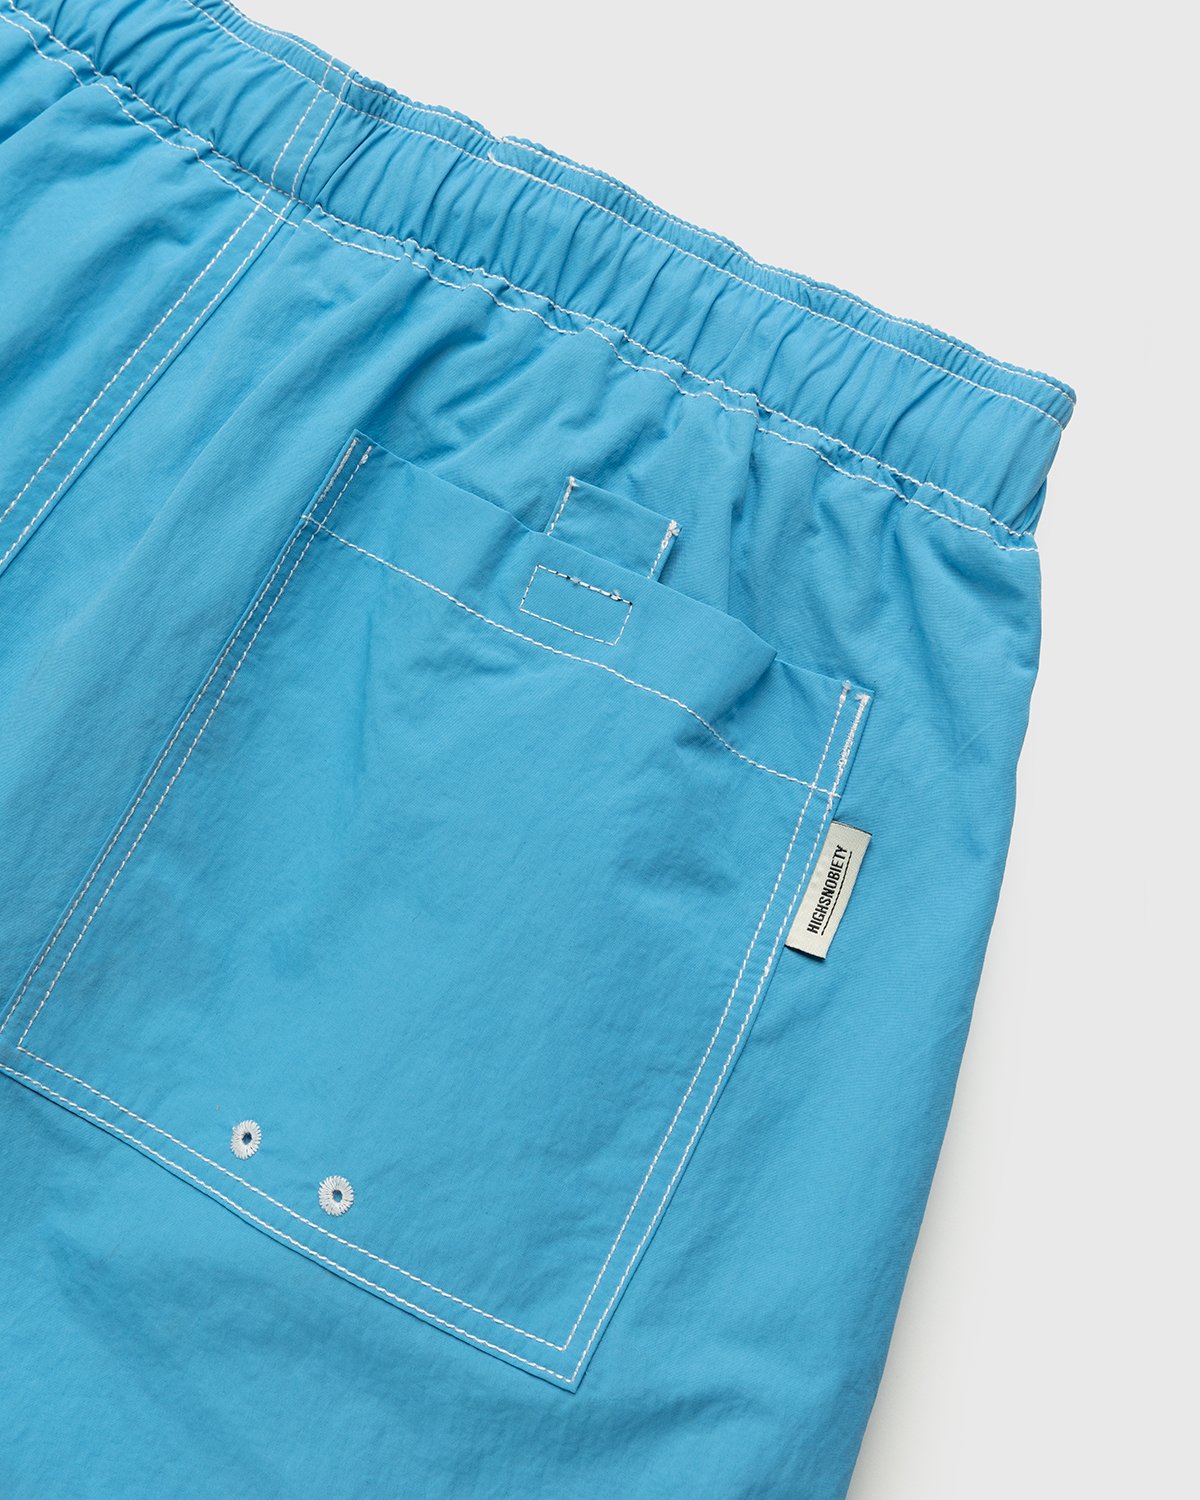 Highsnobiety - Contrast Brushed Nylon Water Shorts Blue - Clothing - Blue - Image 3